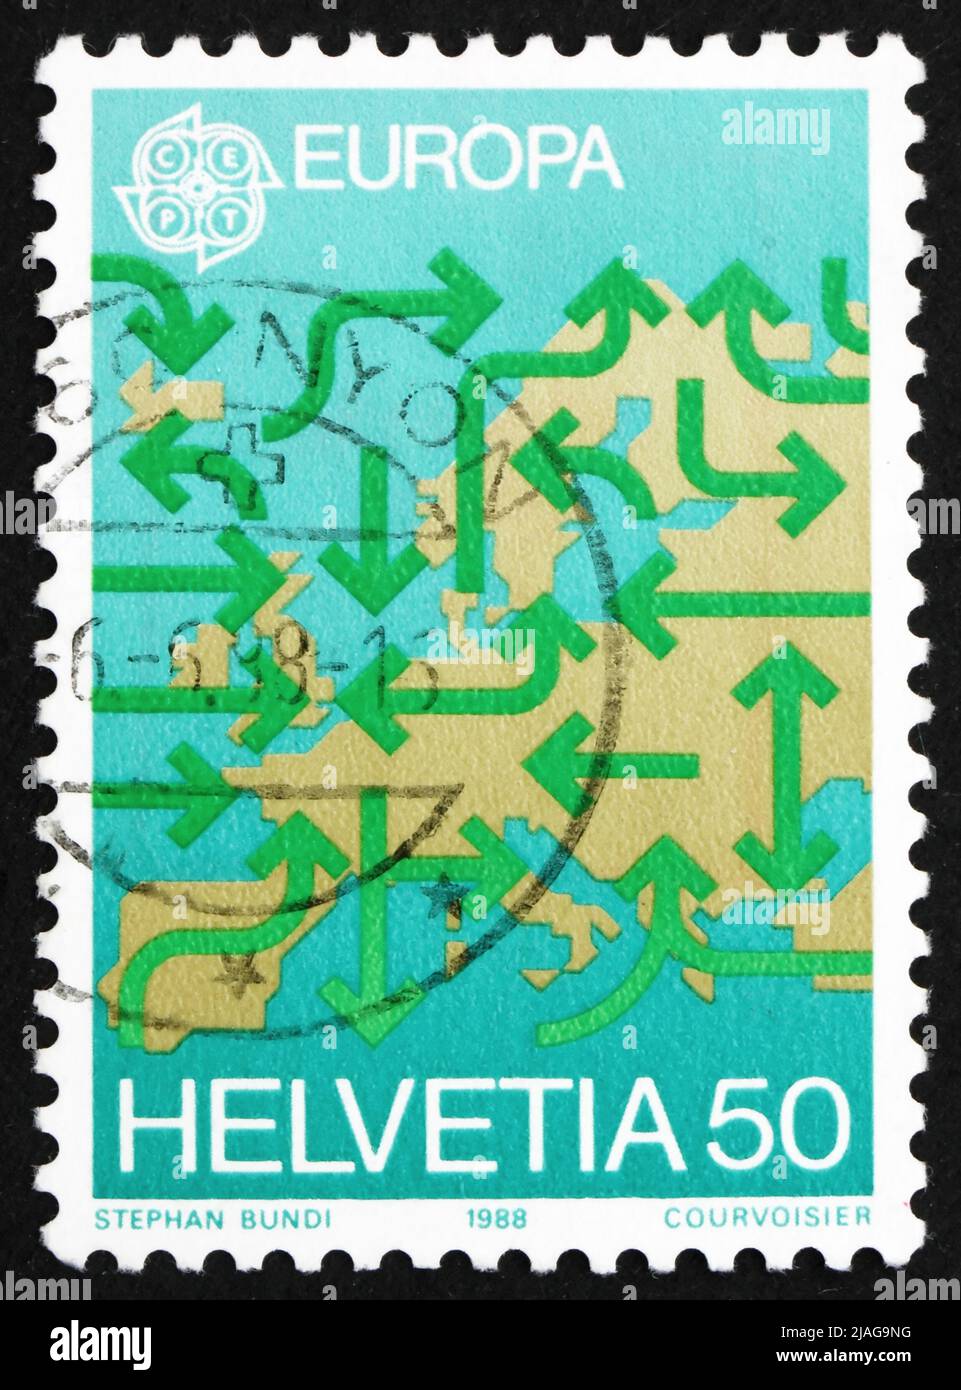 SVIZZERA - CIRCA 1988: Un francobollo stampato in Svizzera mostra la carta d'Europa e frecce, circa 1988 Foto Stock